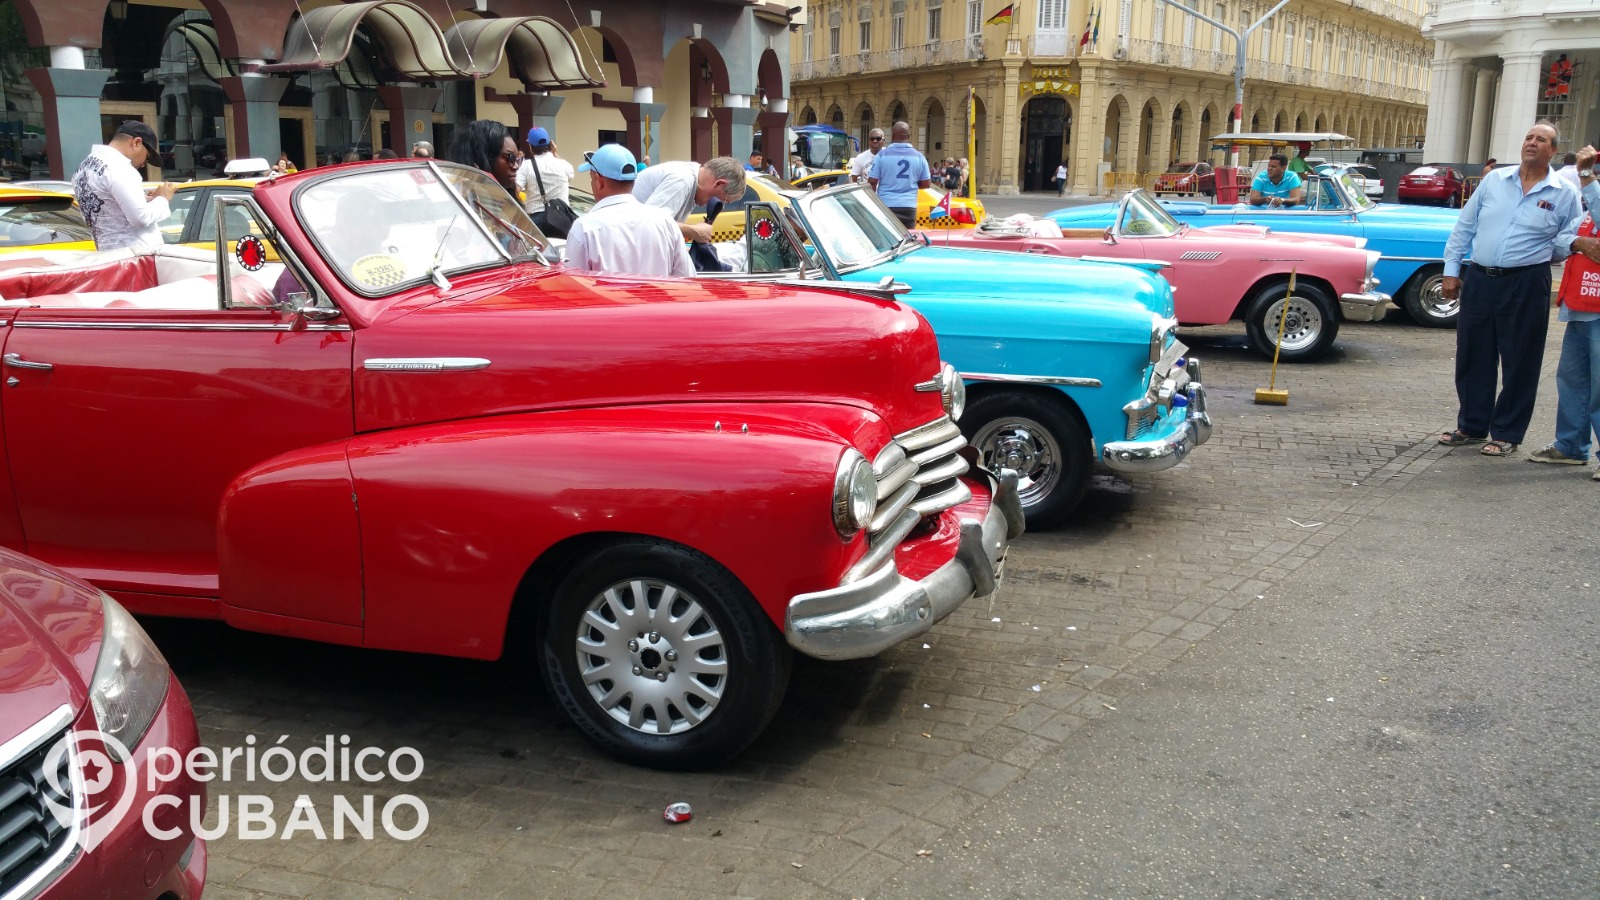 Conoce las 10 características de Cuba que la hacen famosa en el mundo